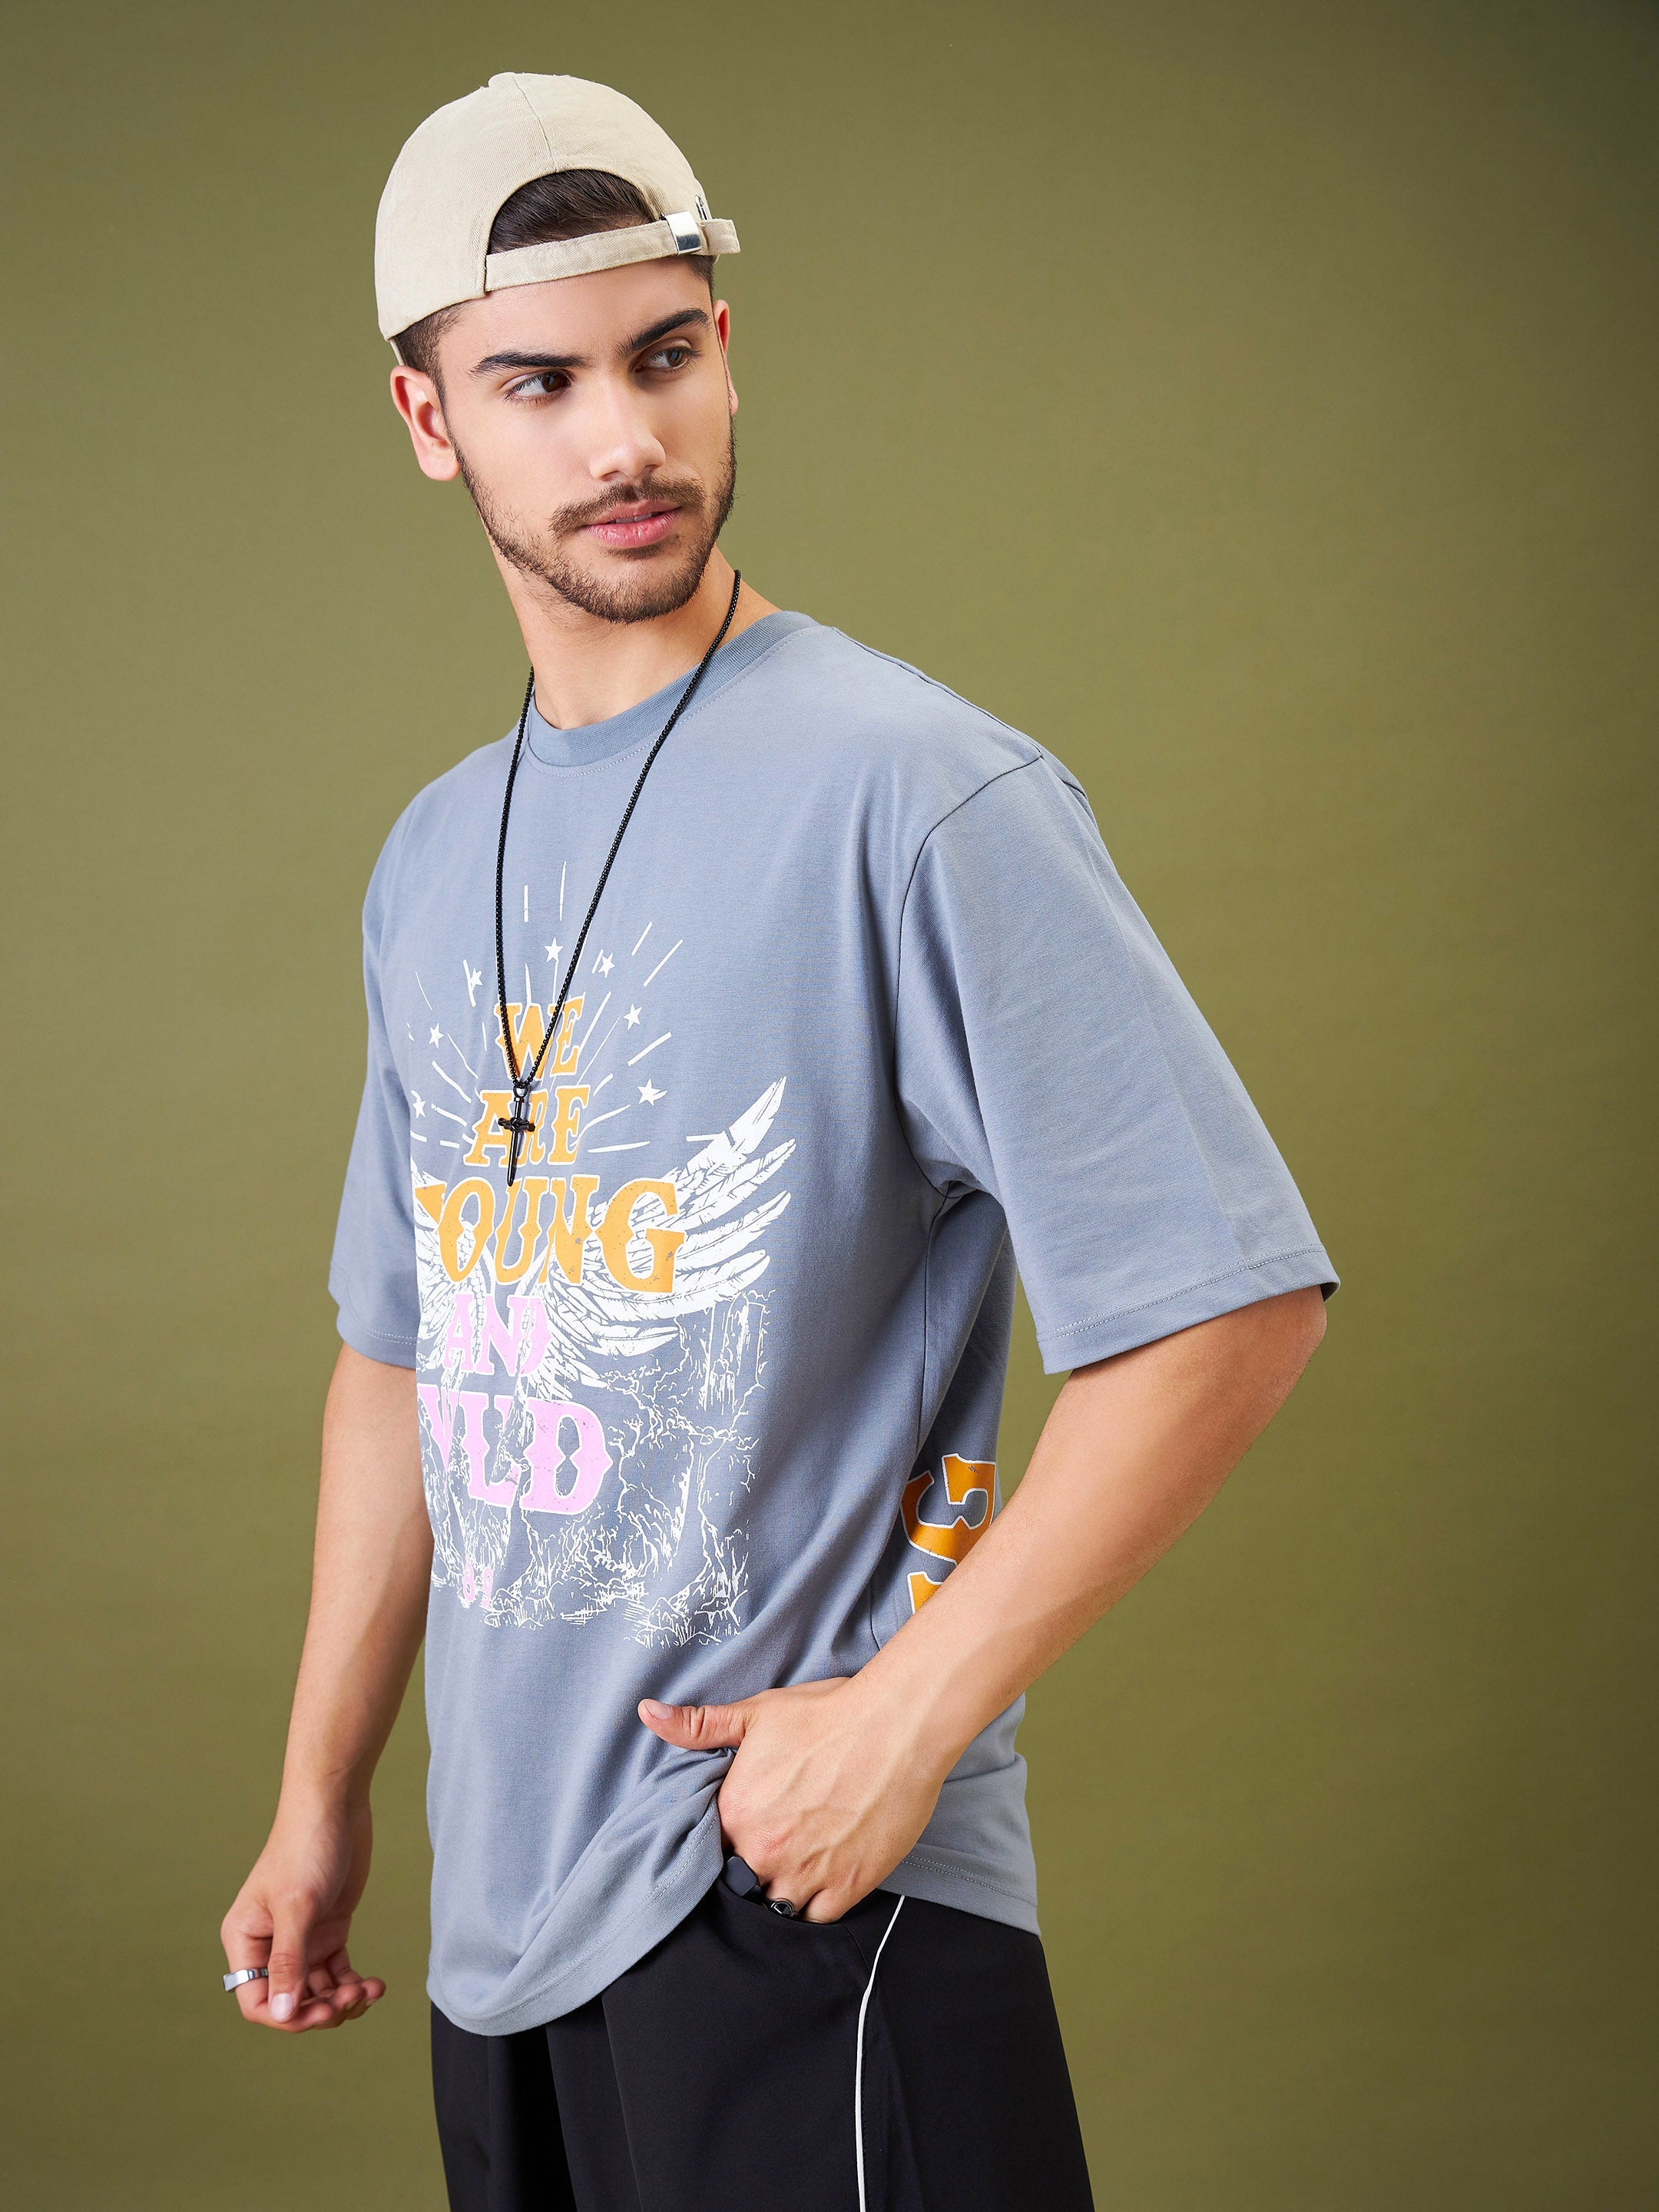 Unisex Grey YOUNG WILD & FREE Oversize T-Shirt - MASCLN SASSAFRAS